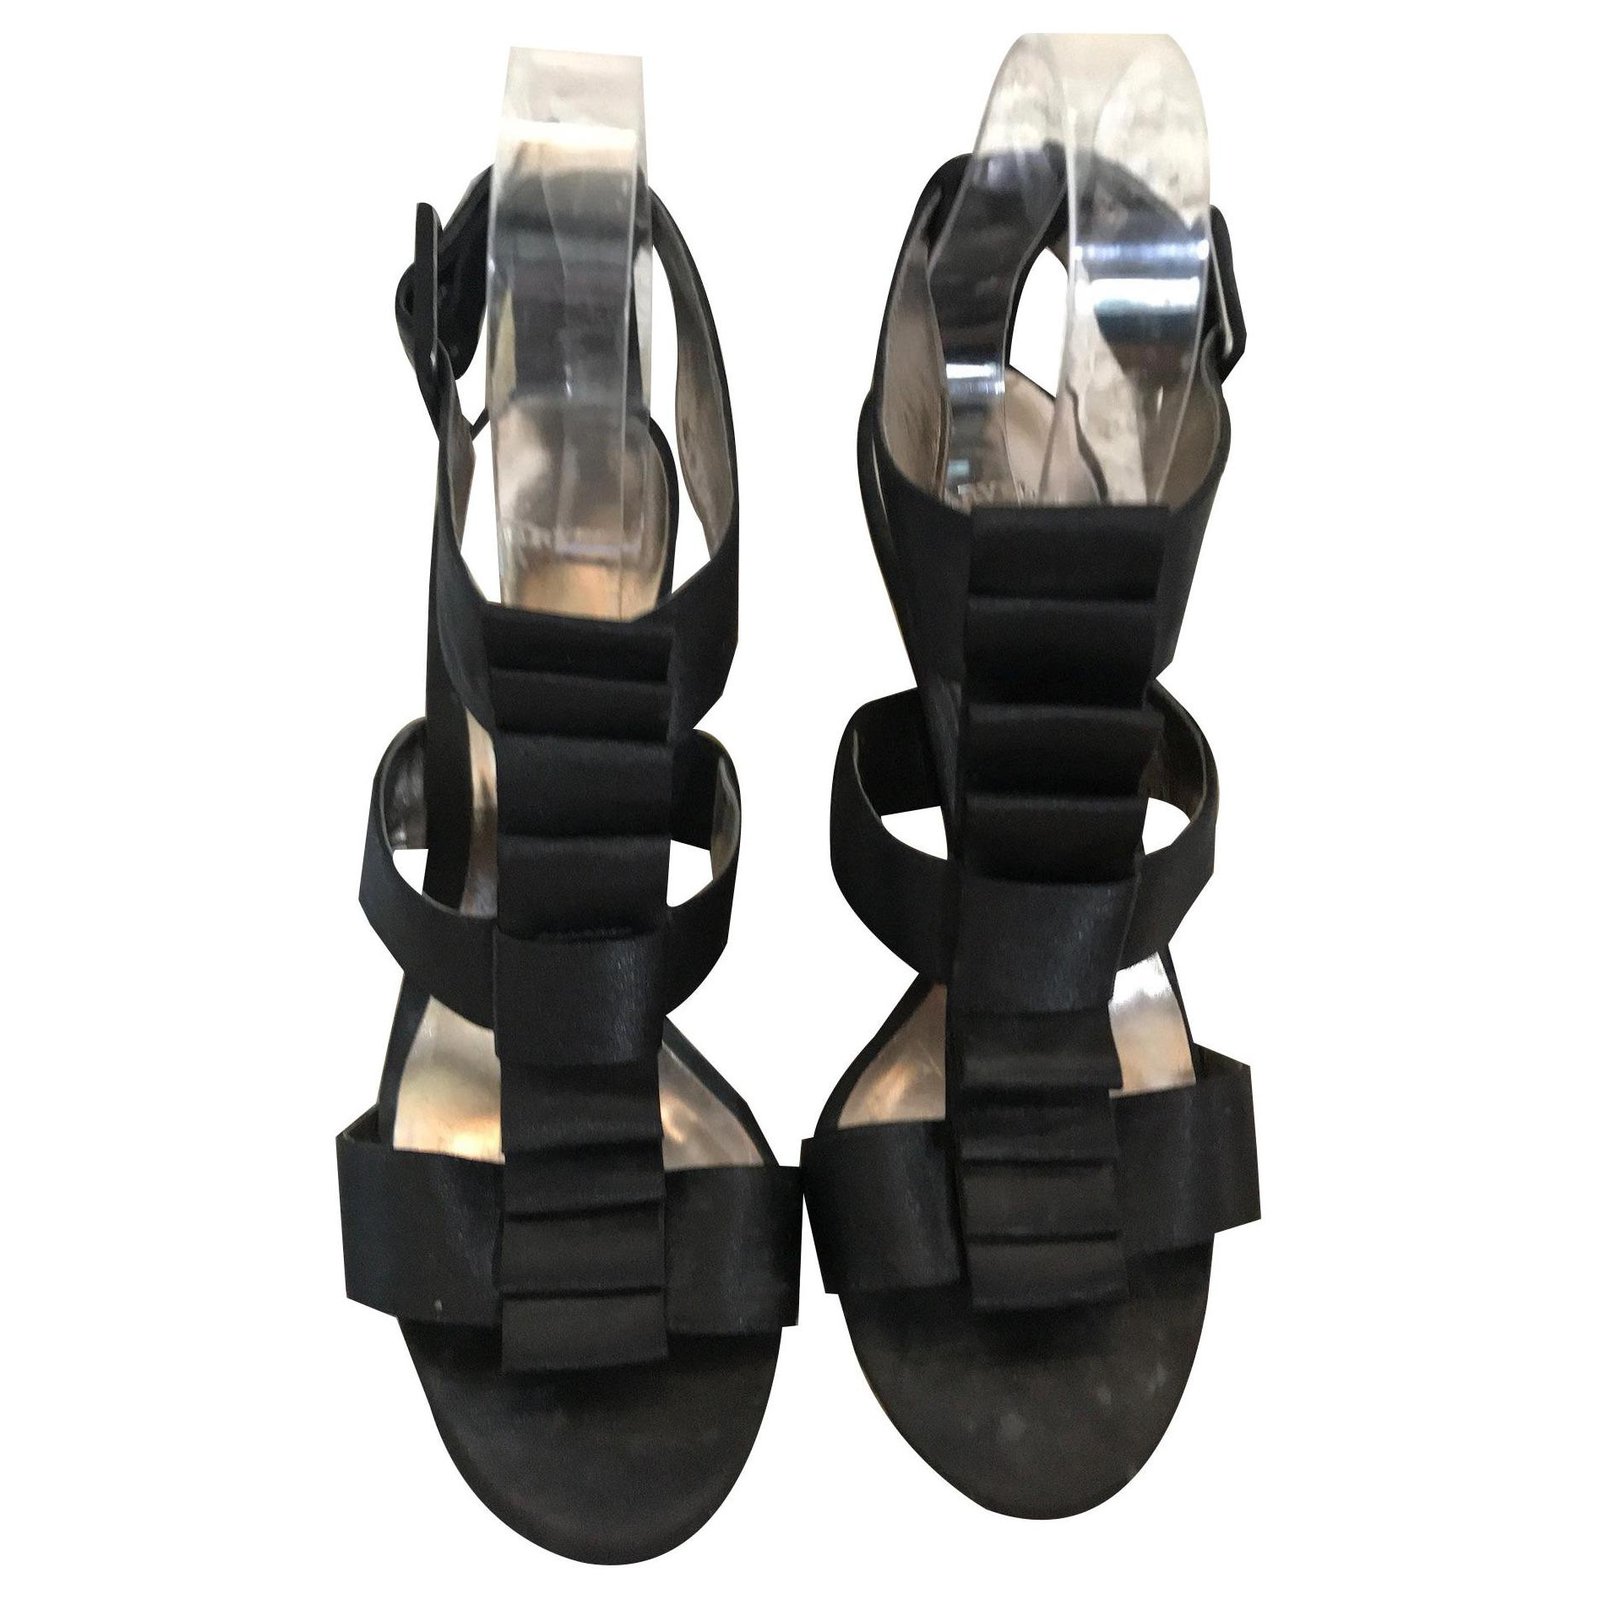 carvela sandals